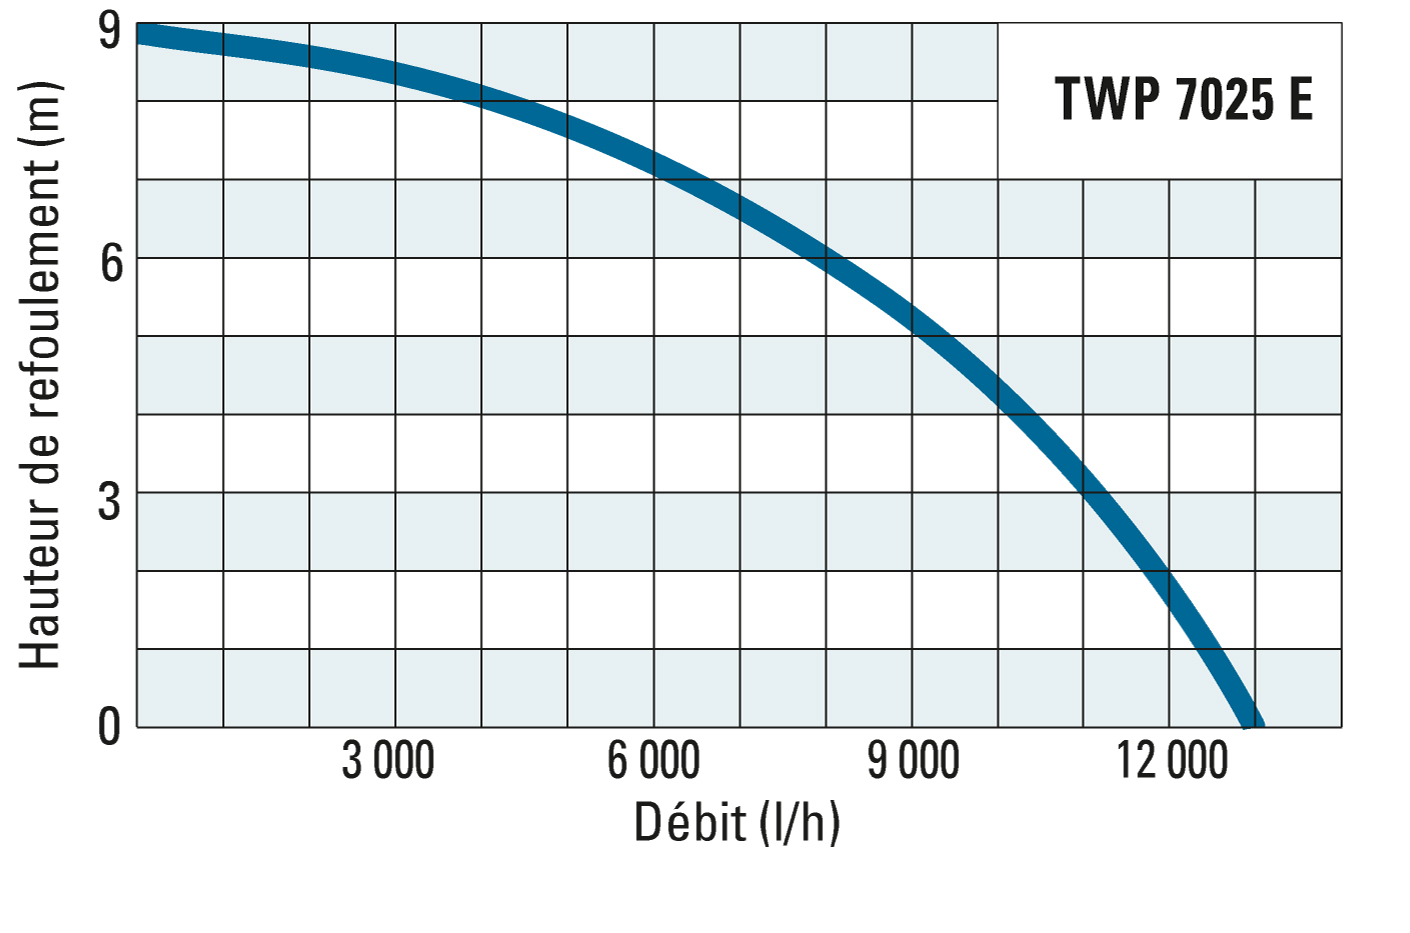 Hauteur de refoulement et débit de la TWP 7025 E